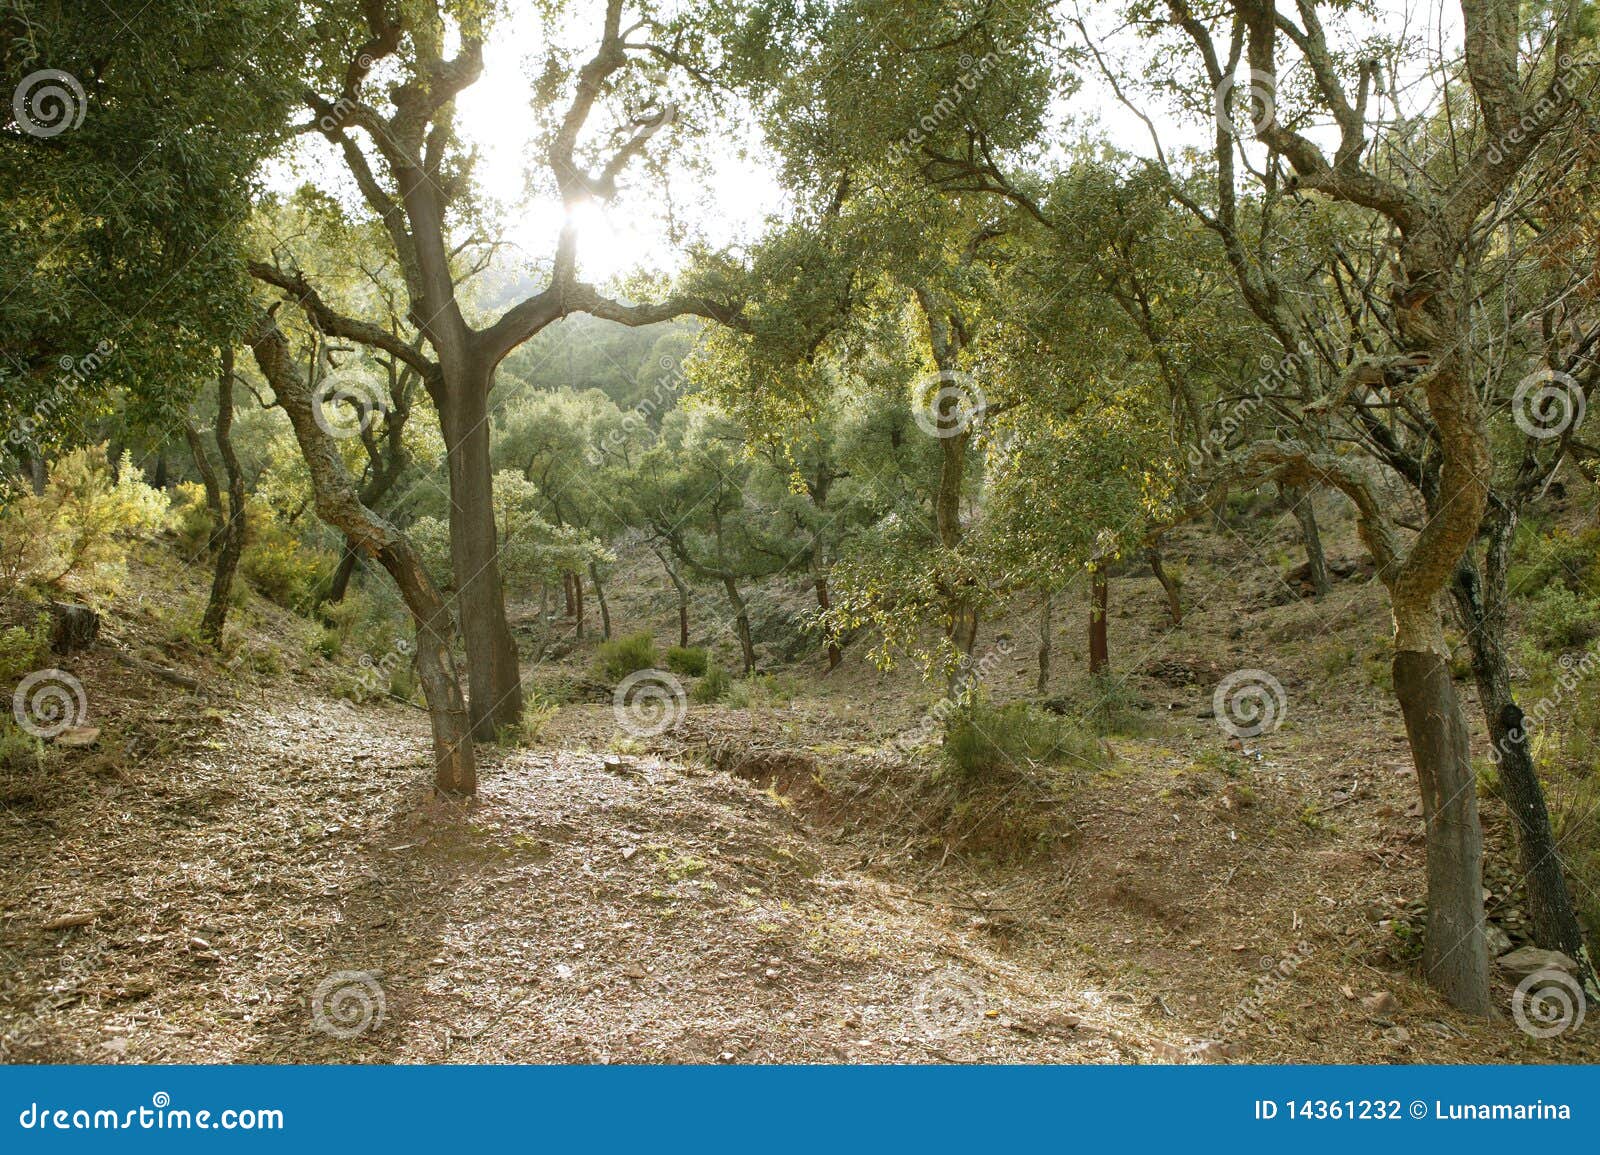 cork trees forest in espadan castellon spain